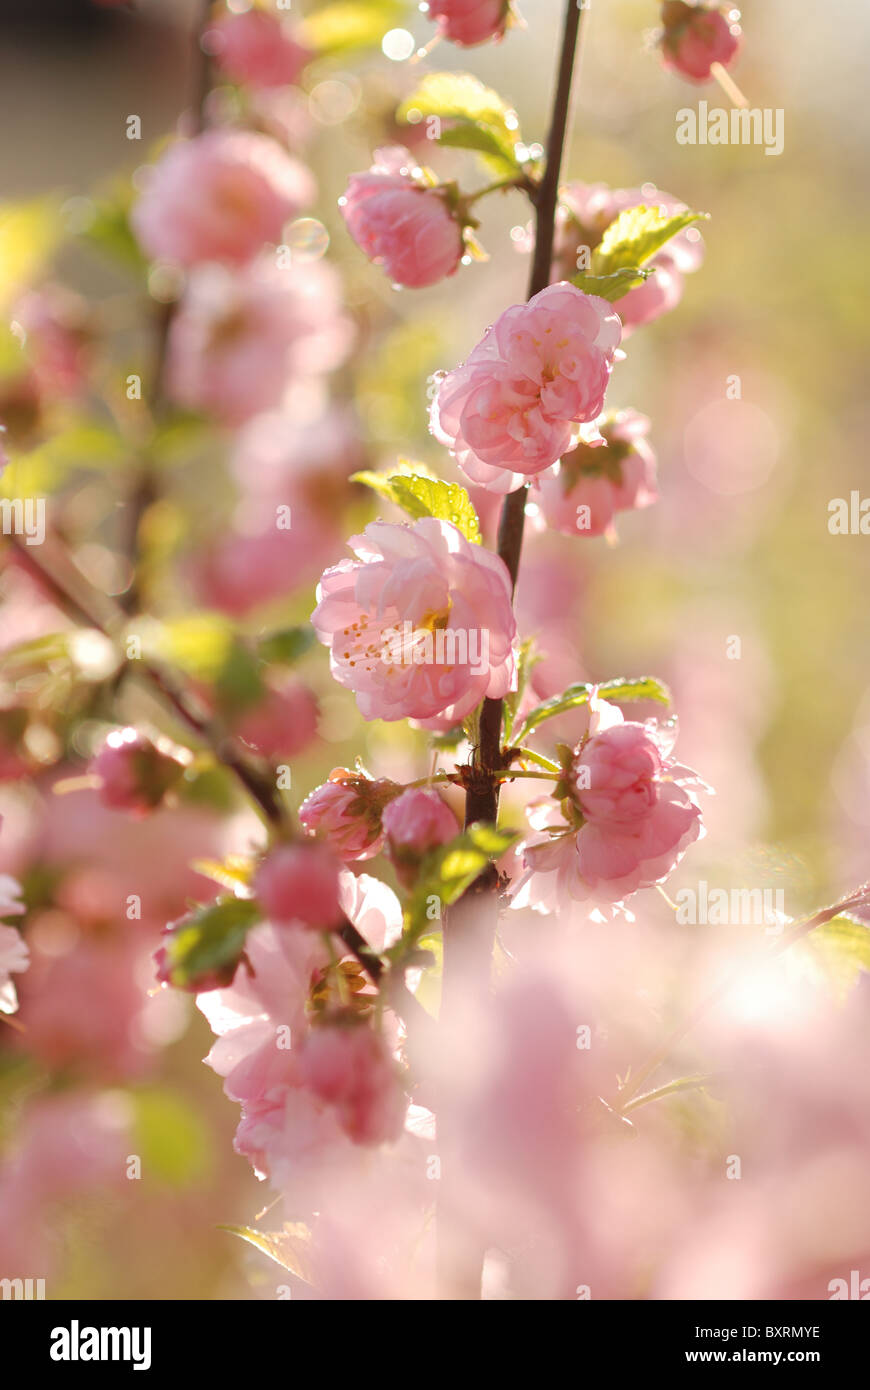 La floraison du printemps à l'amandier (Prunus triloba) Banque D'Images